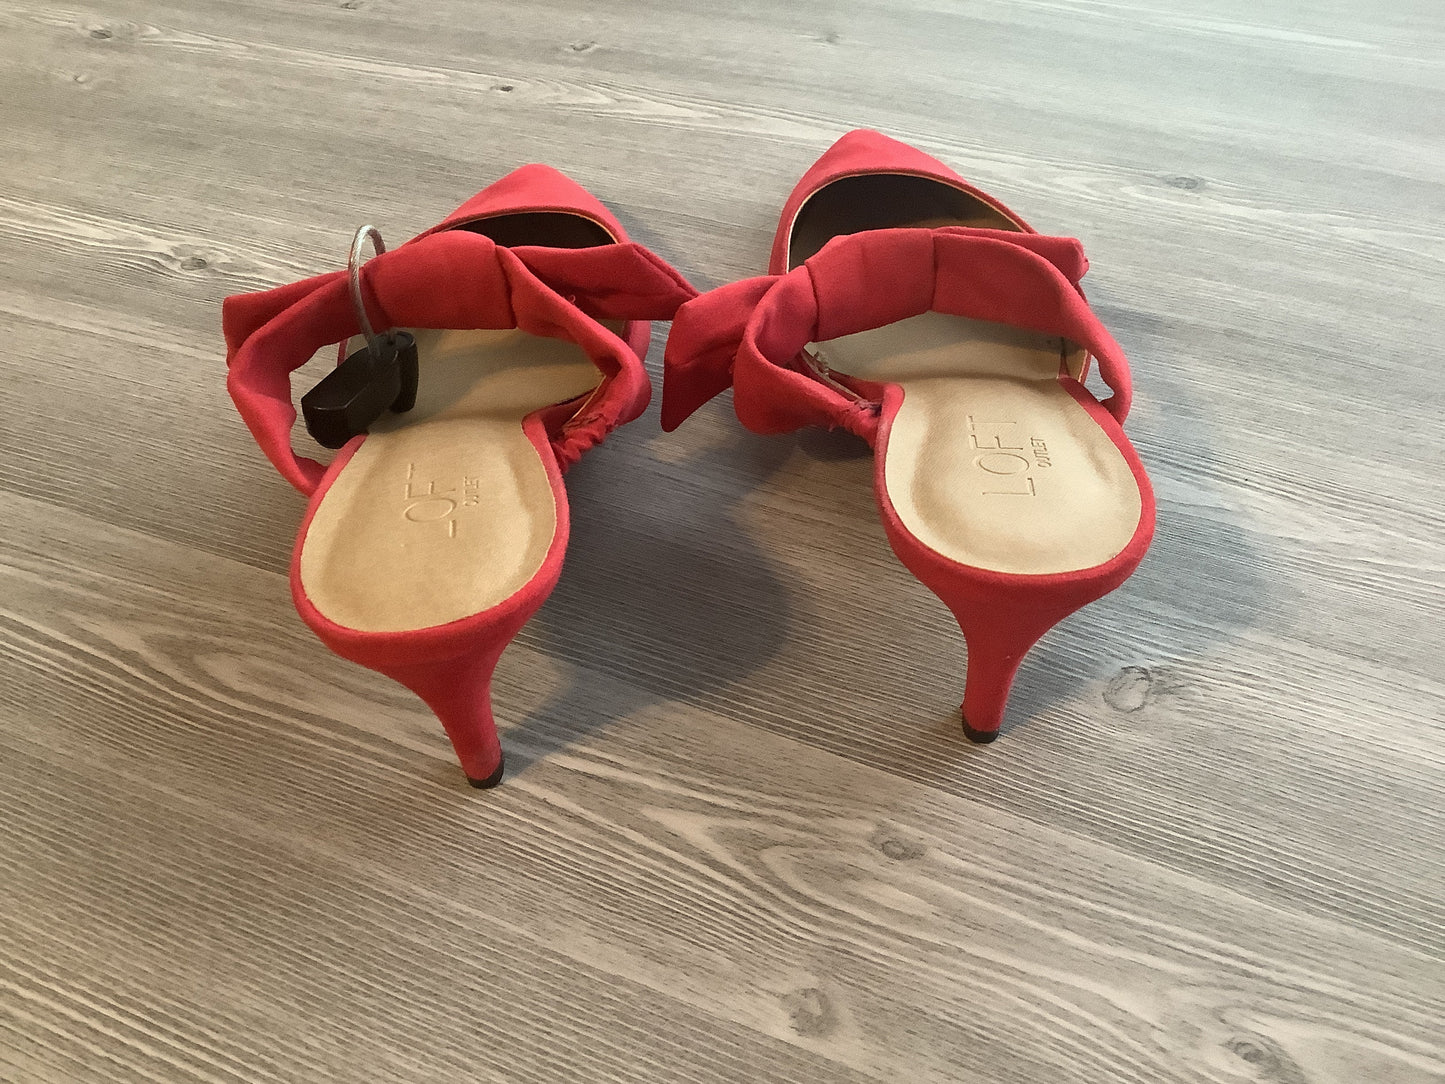 Red Shoes Heels Kitten Loft, Size 8